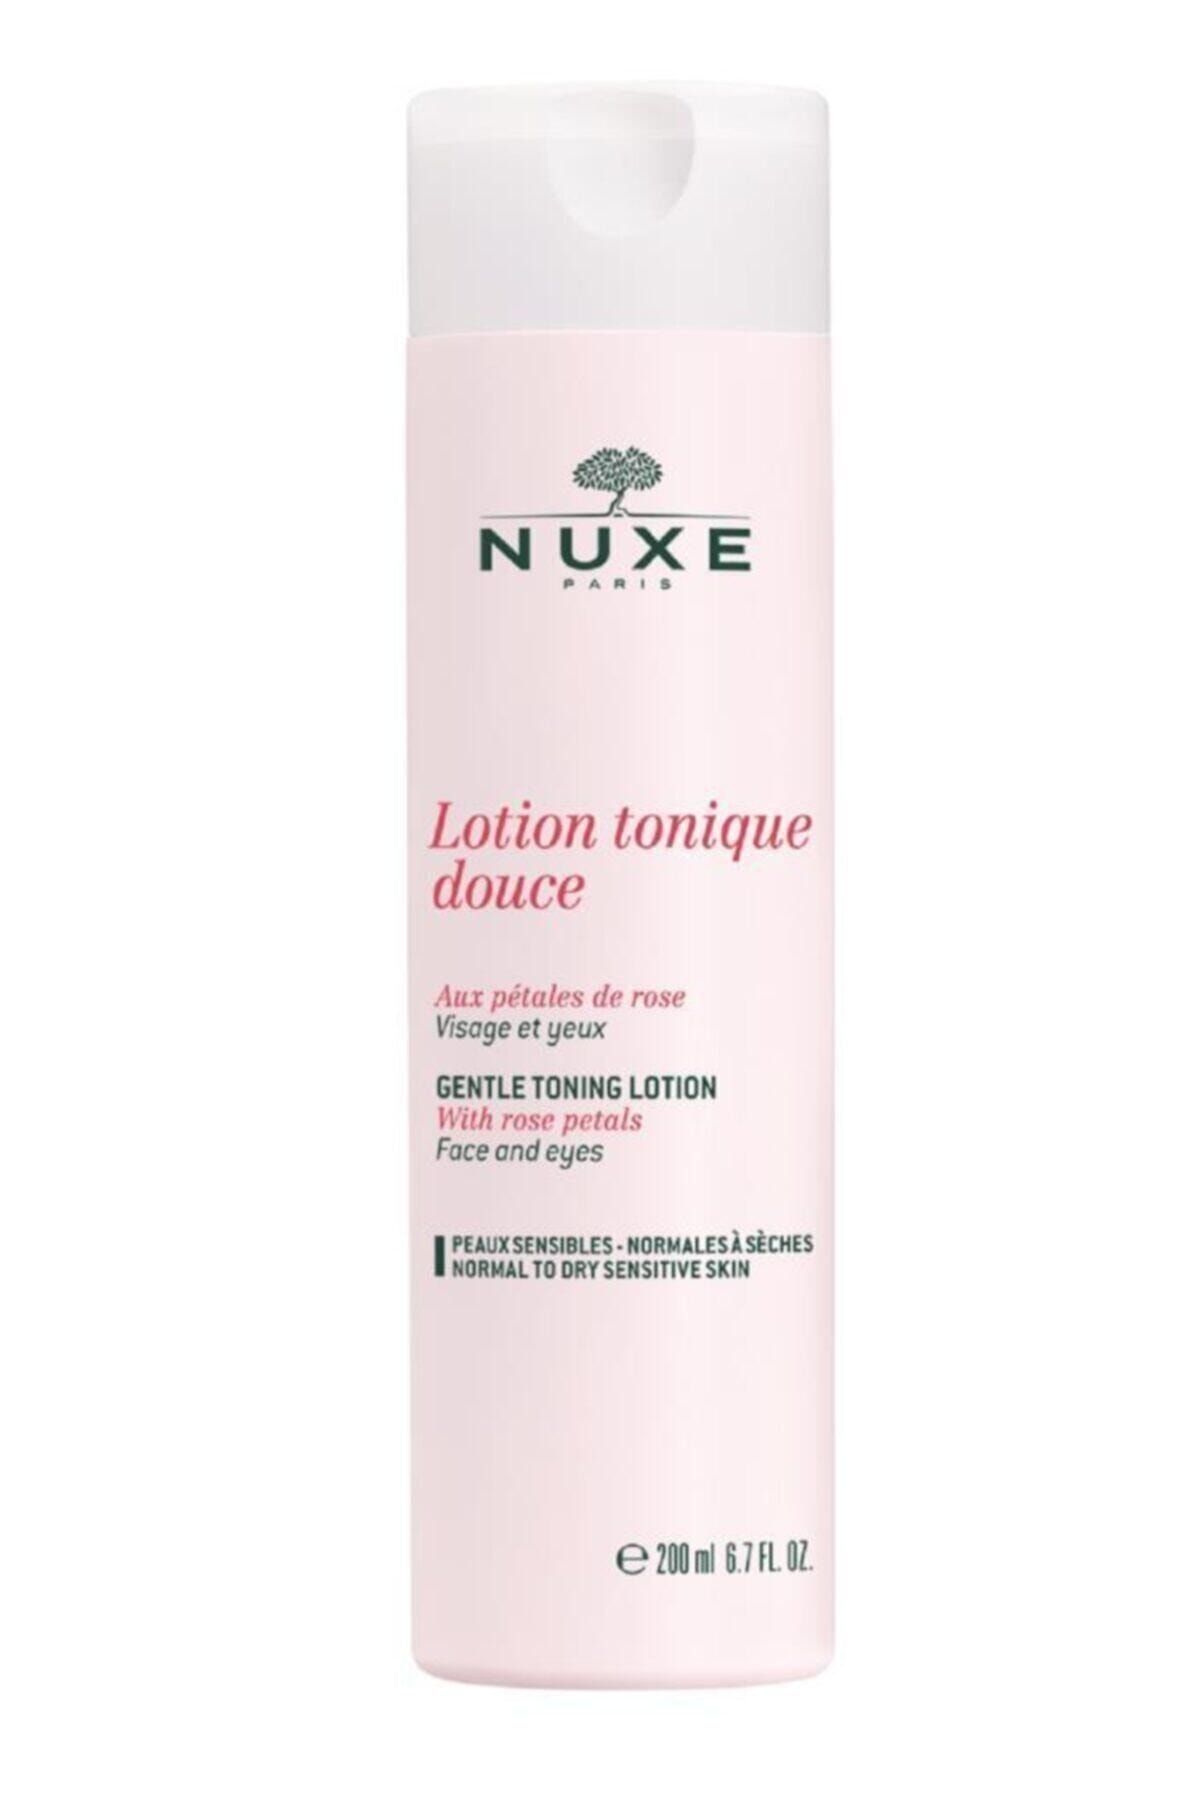 Nuxe Lotion Tonique Tonik Losyon 200ml